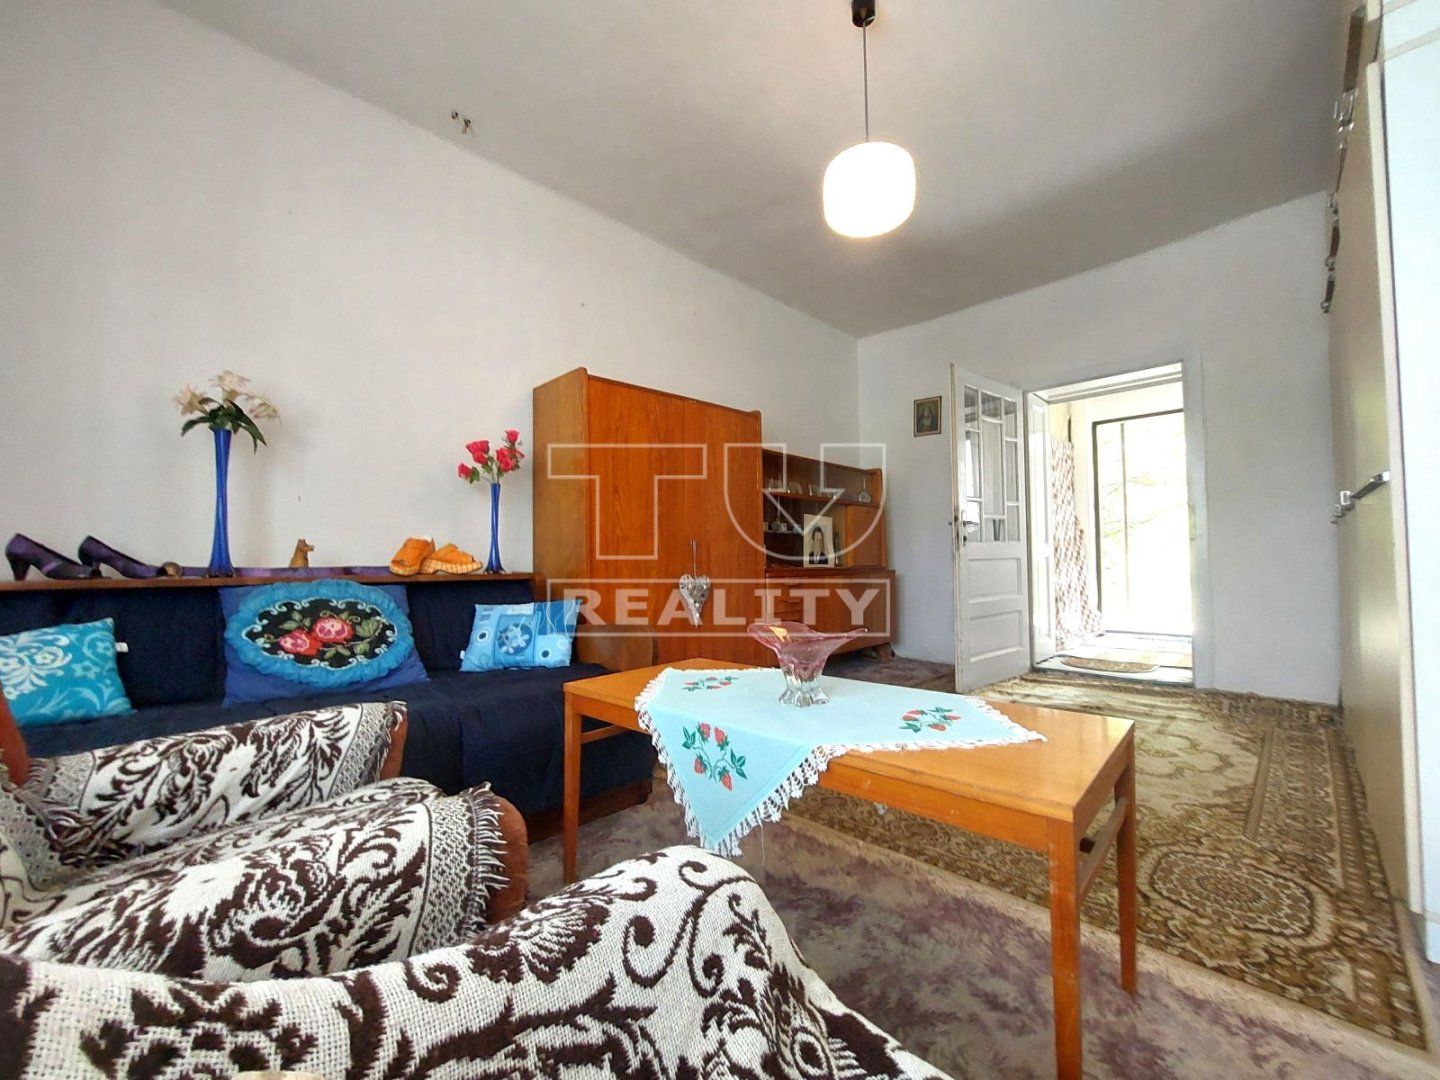 Znížená cena!!!
Na predaj starší rodinný dom v Nitrianskej Blatnici, postavený na krásnom slnečnom pozemku 2000 m2